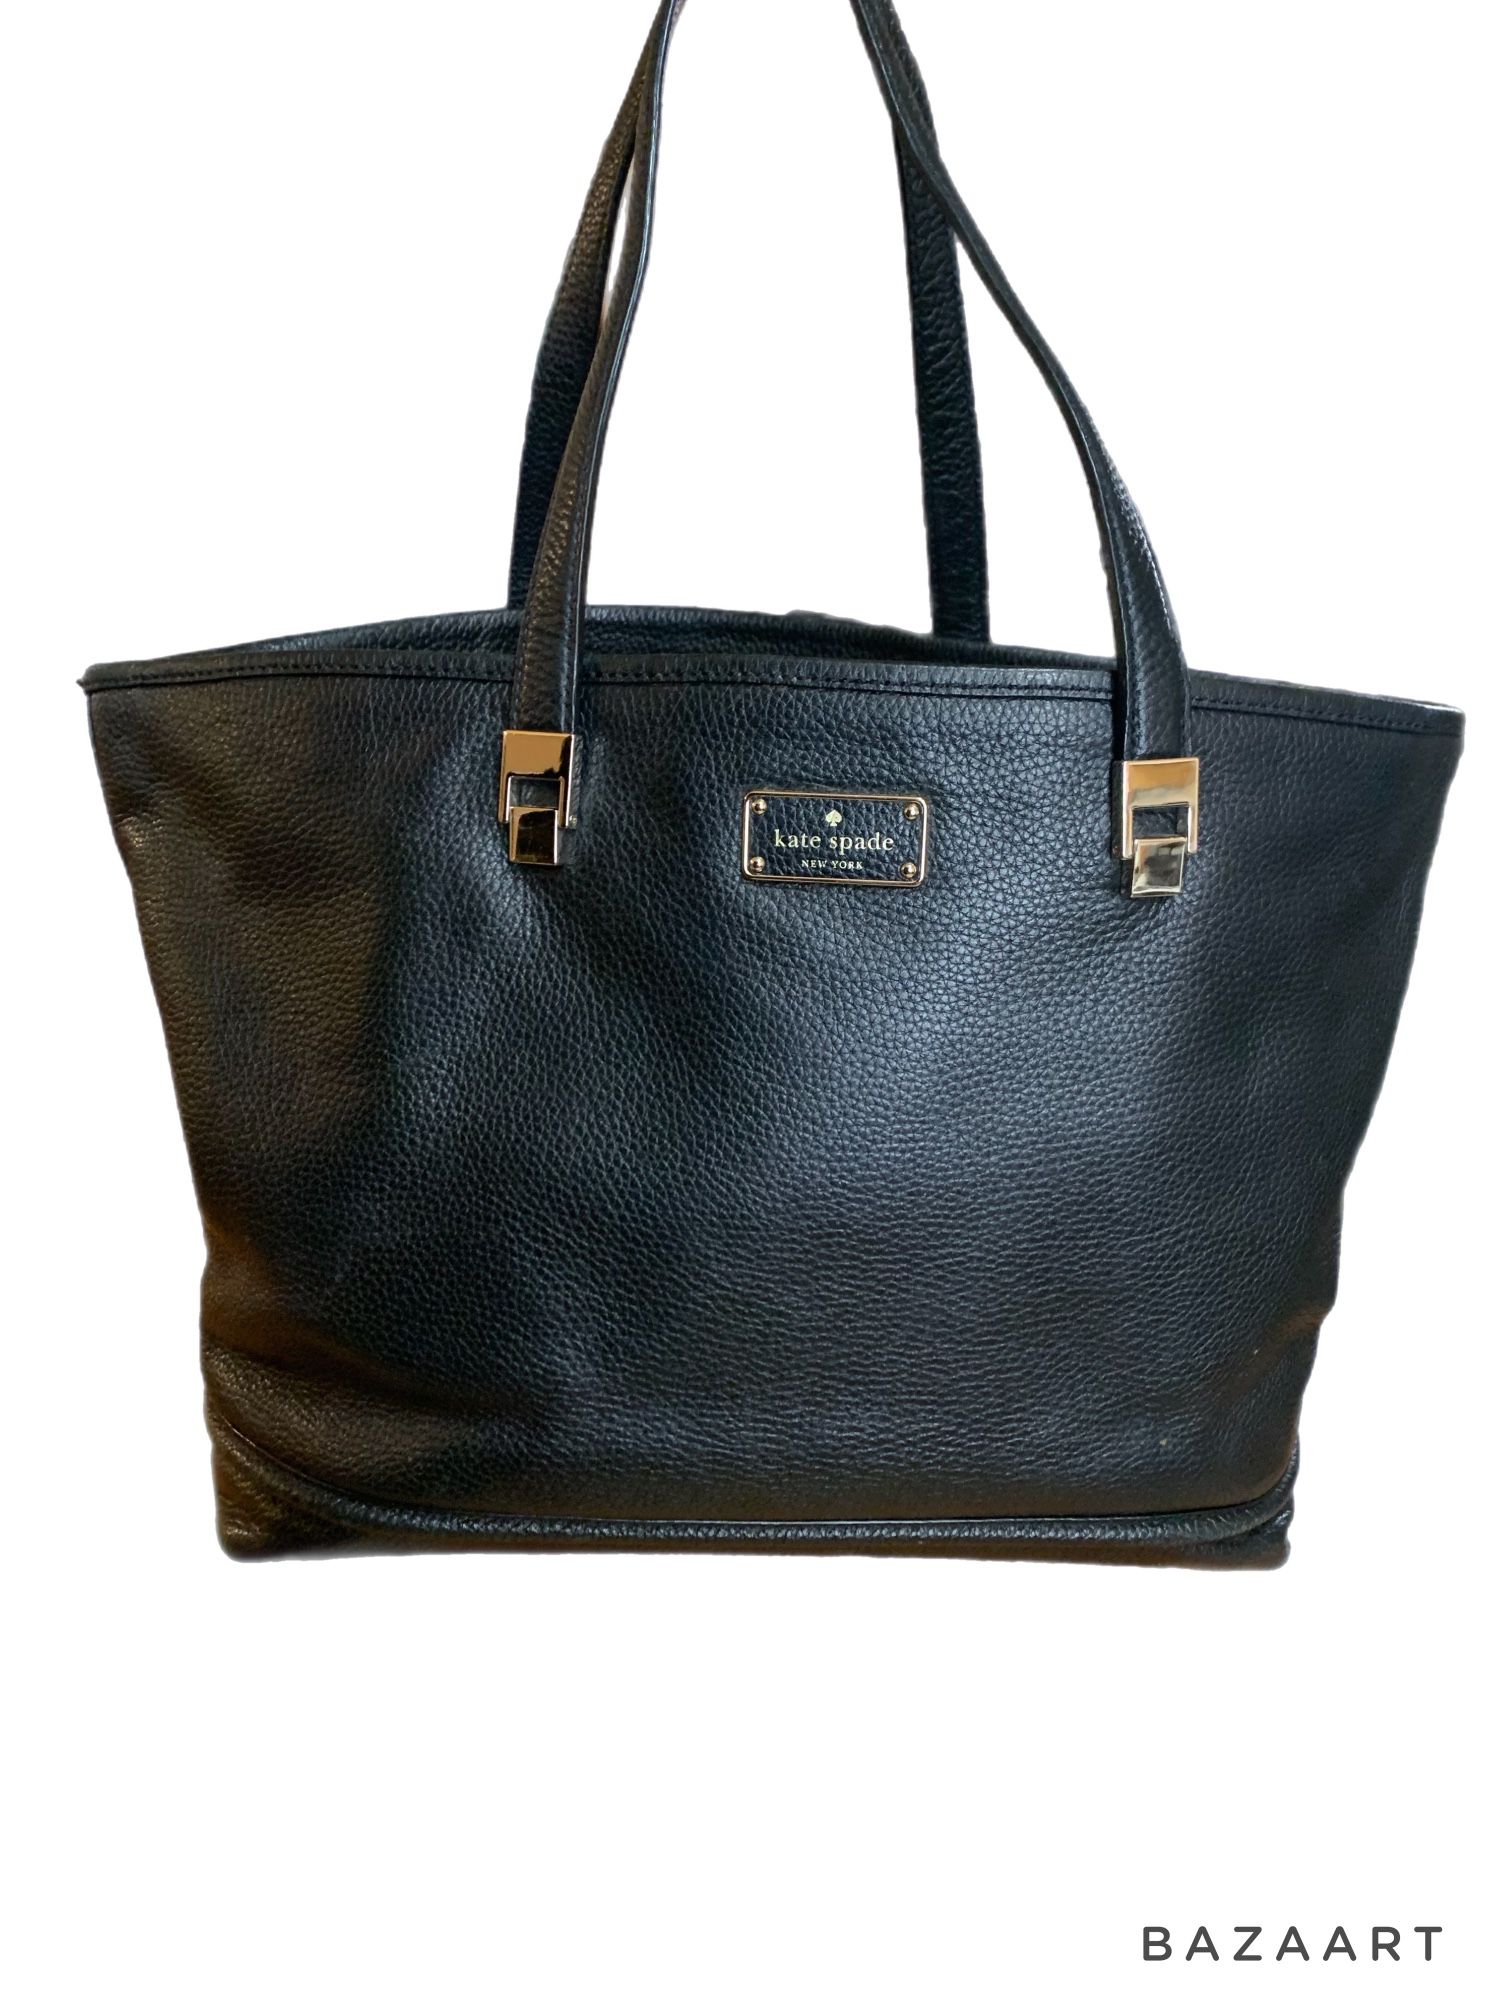 Kate Spade Black Shoulder Pebbled Leather Tote Bag